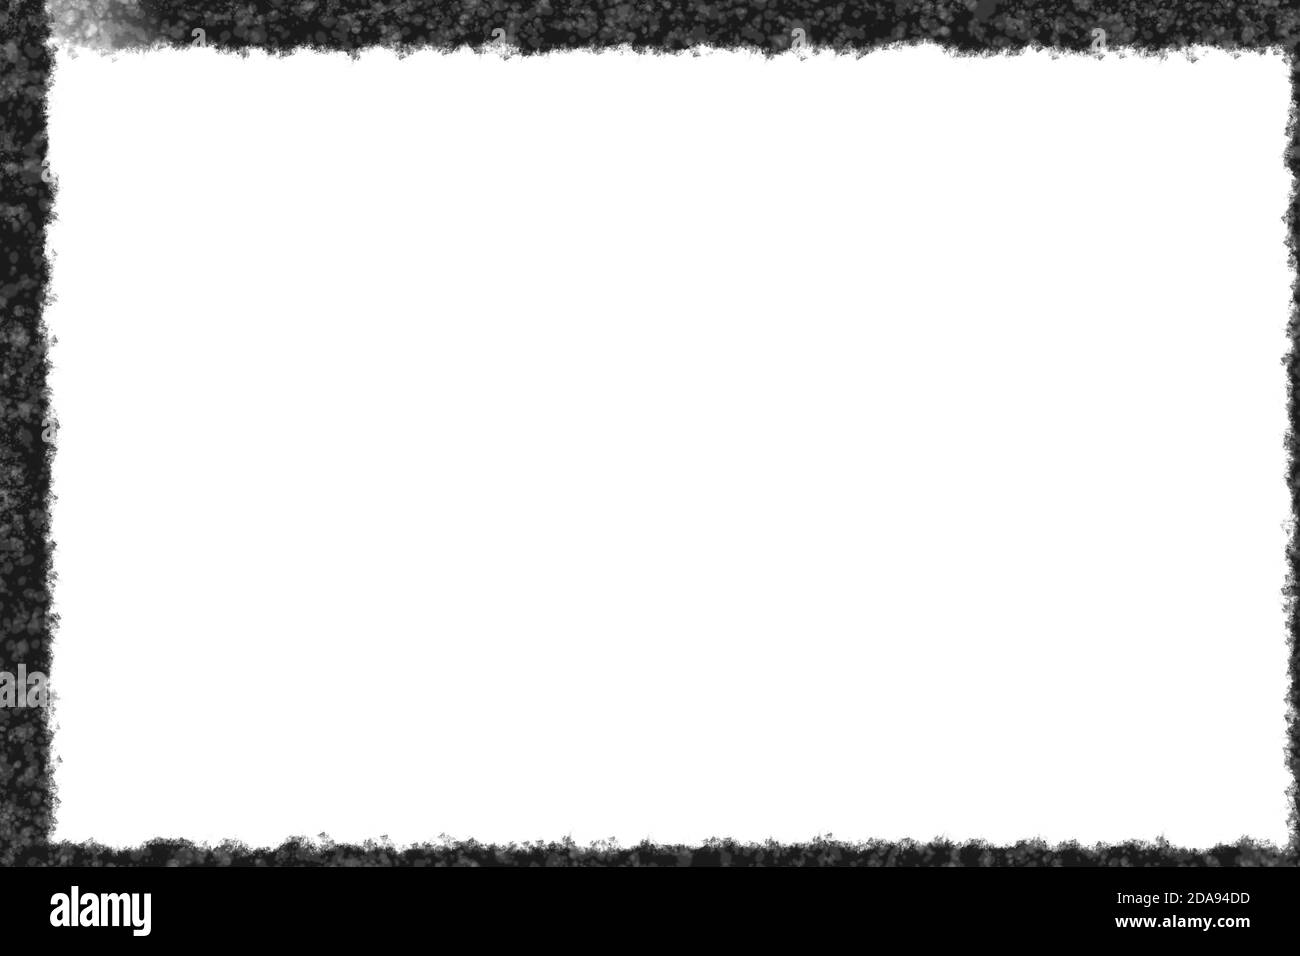 marco de carbón alrededor de una hoja blanca de papel Foto de stock